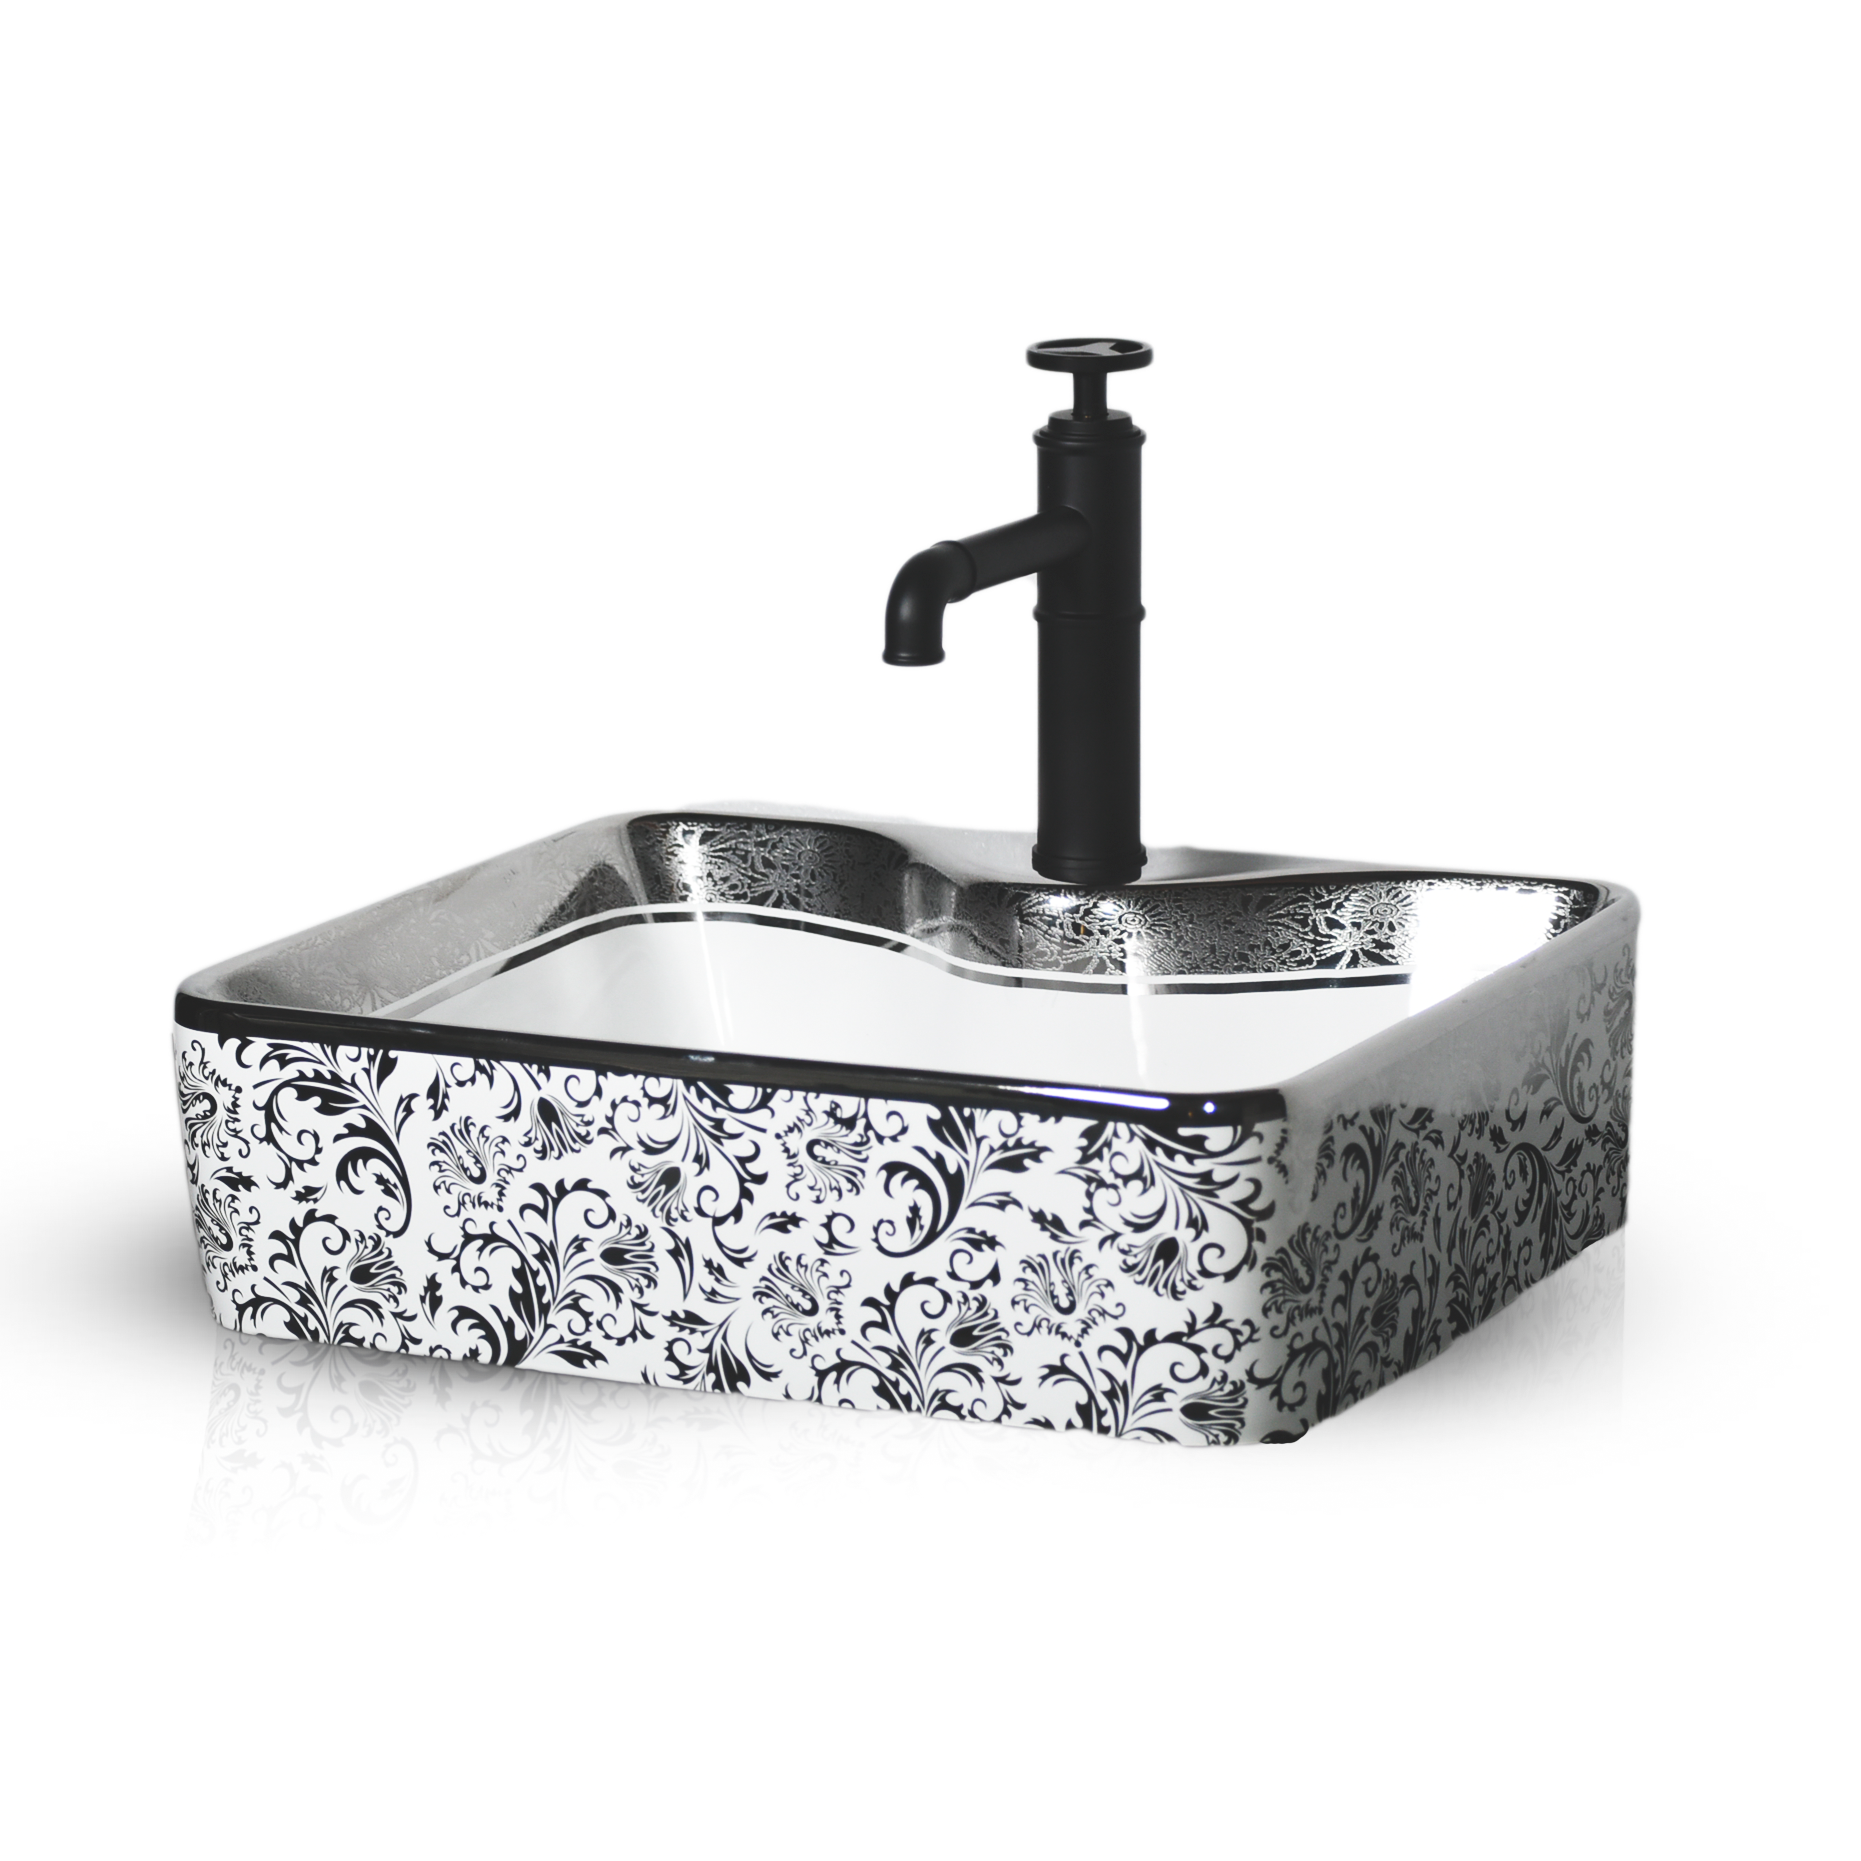 inart silver color wash basin for bathroom